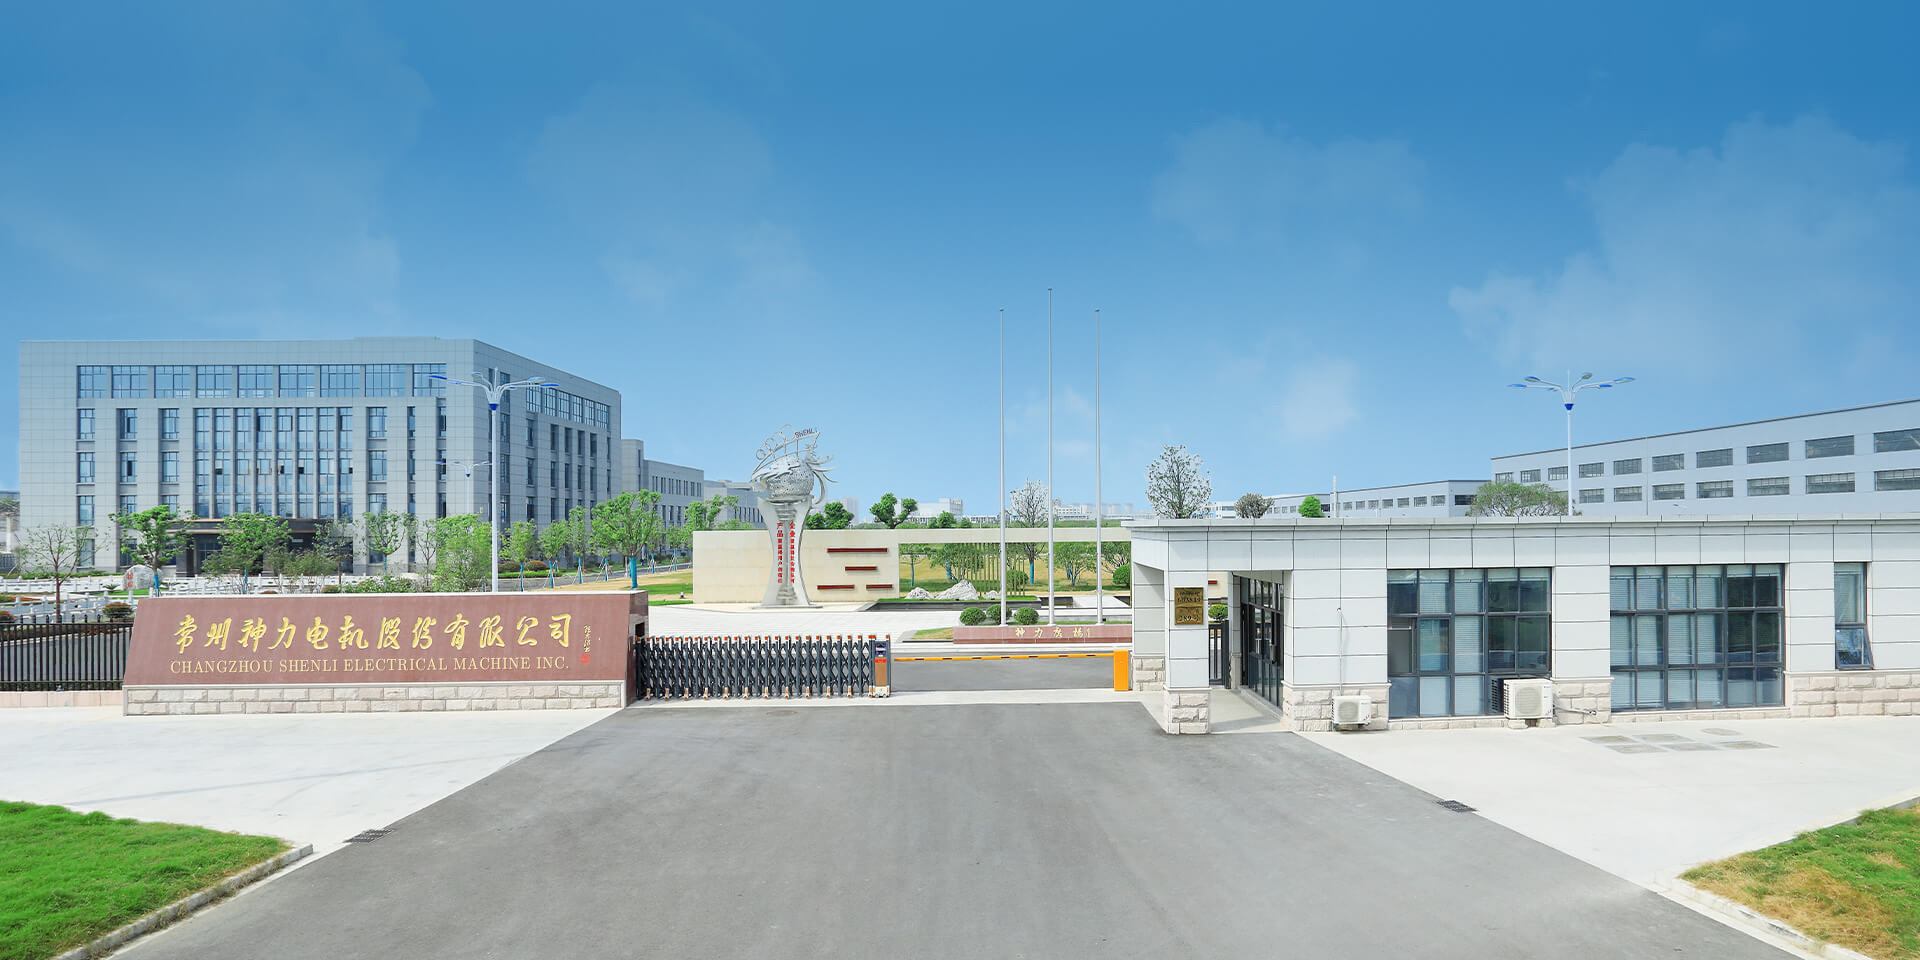 Changzhou Shenli Electrical Machine Inc.